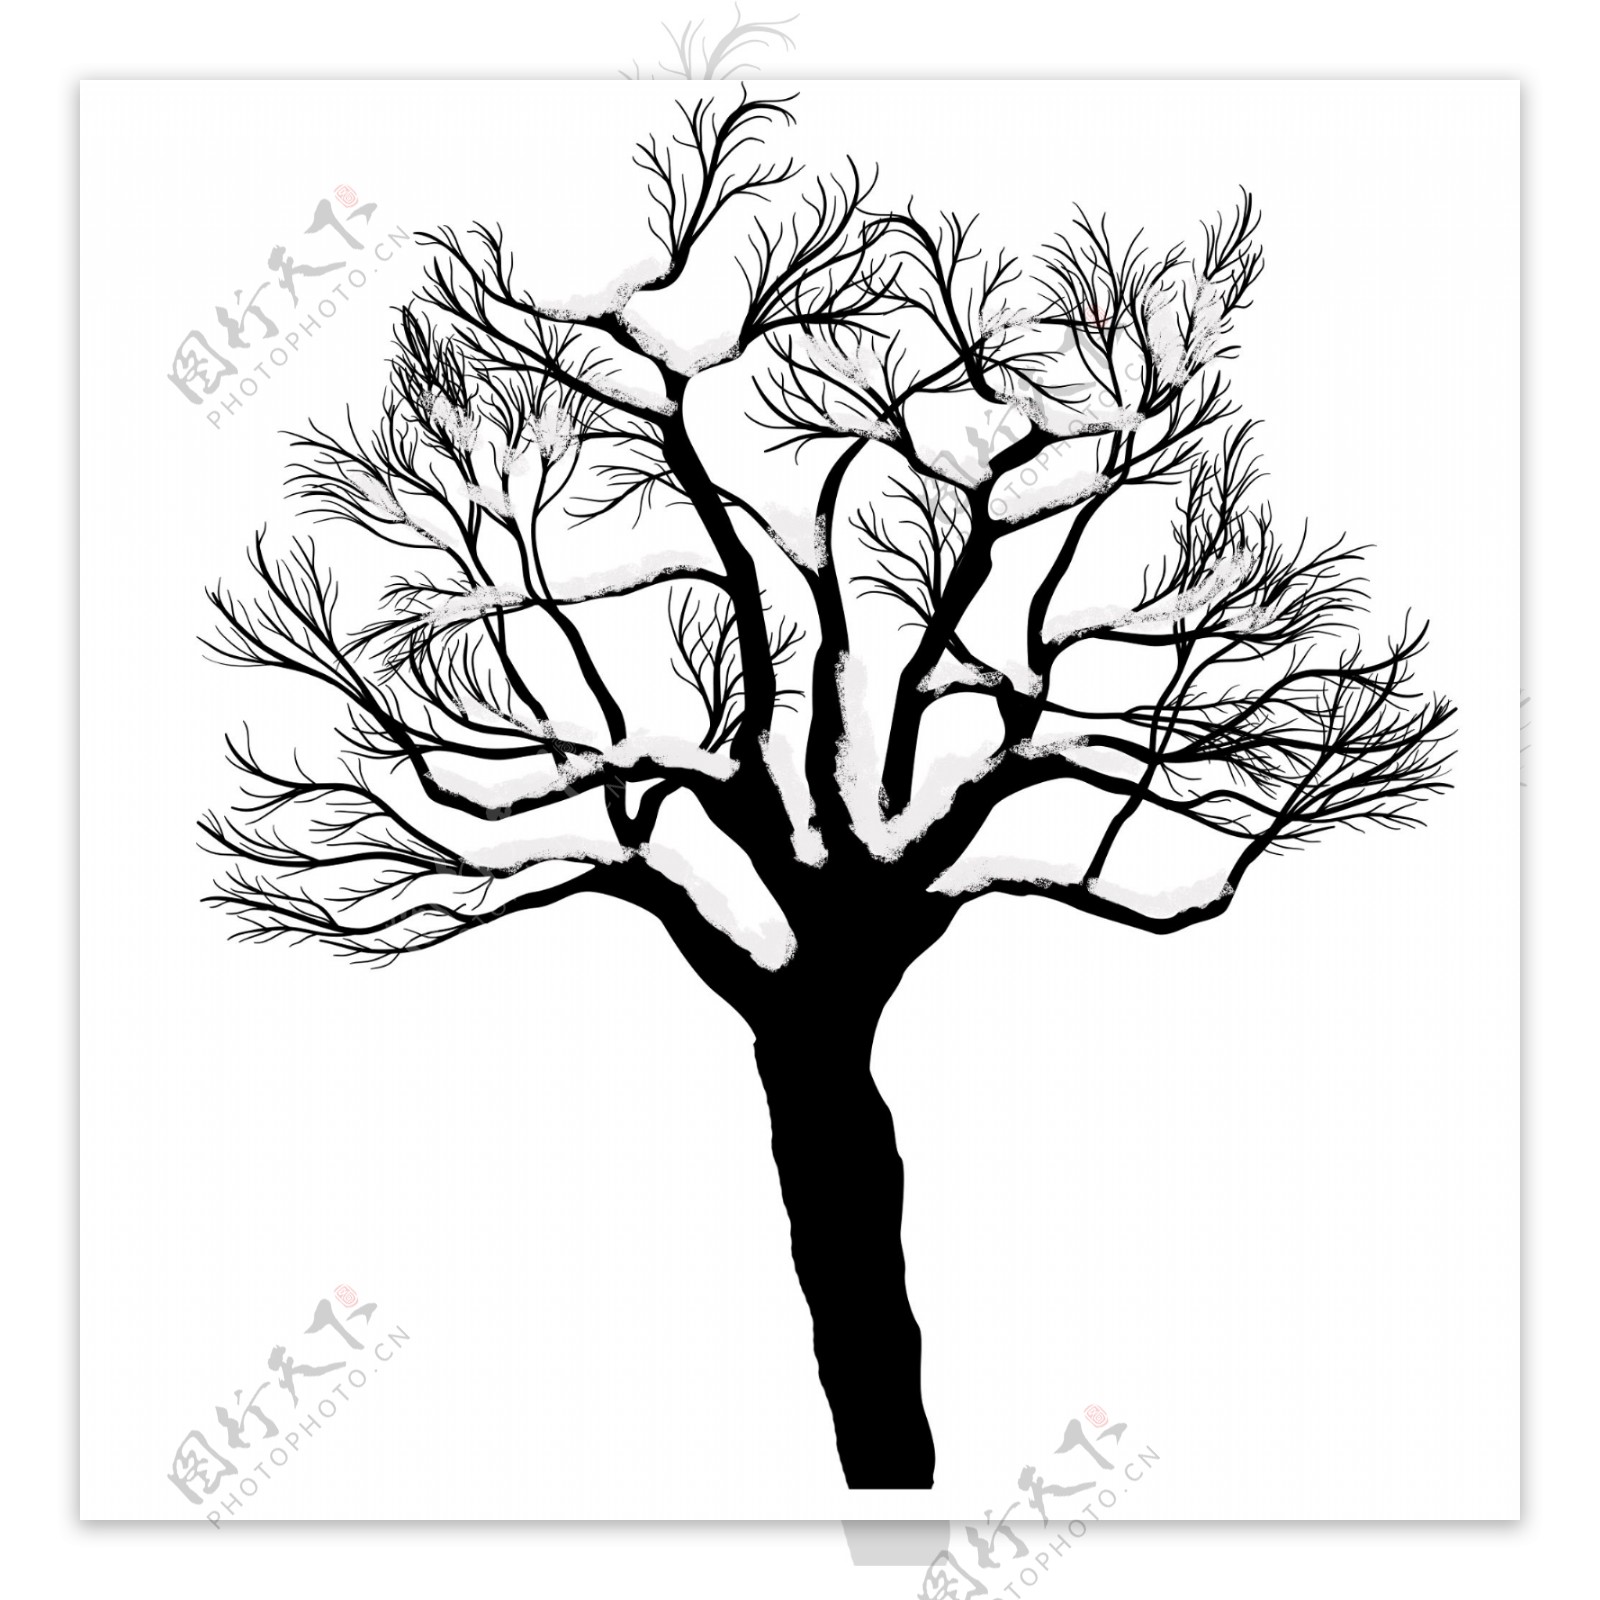 冬季下雪落雪树木黑色秃树装饰素材设计